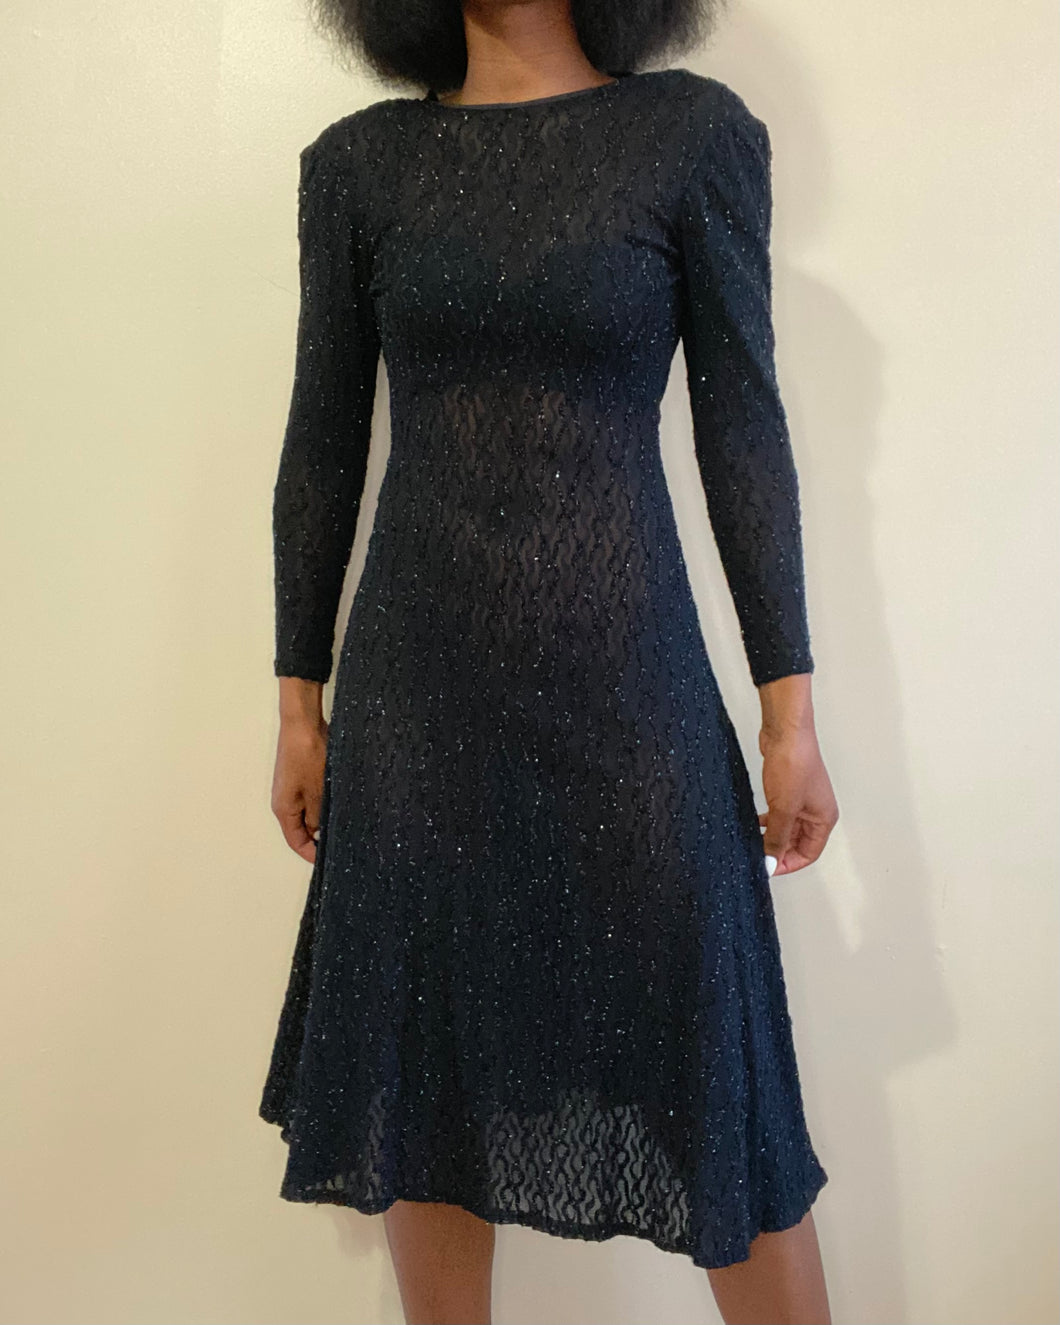 Vintage Sheer Embellished Black Dress